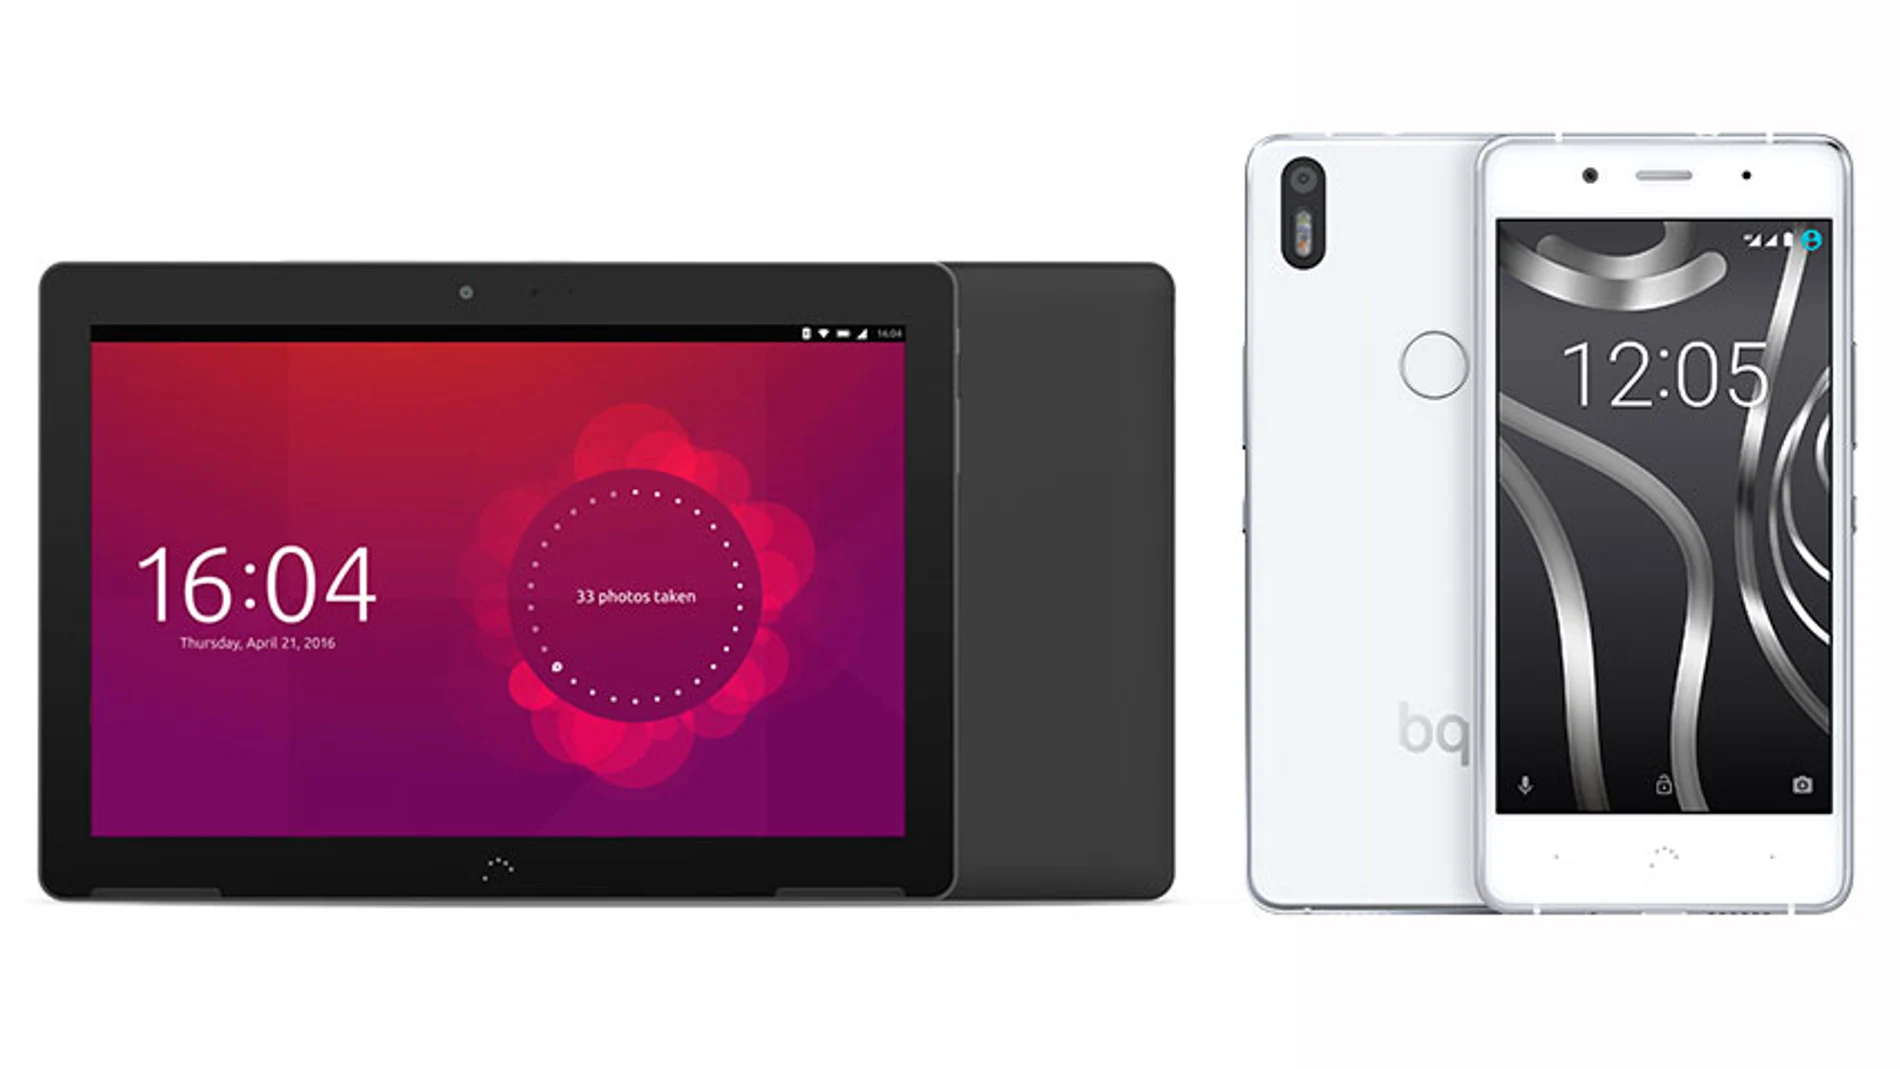 Especial MWC 2016 - BQ presenta el nuevo Aquaris X5 Plus y la primera tablet con Ubuntu